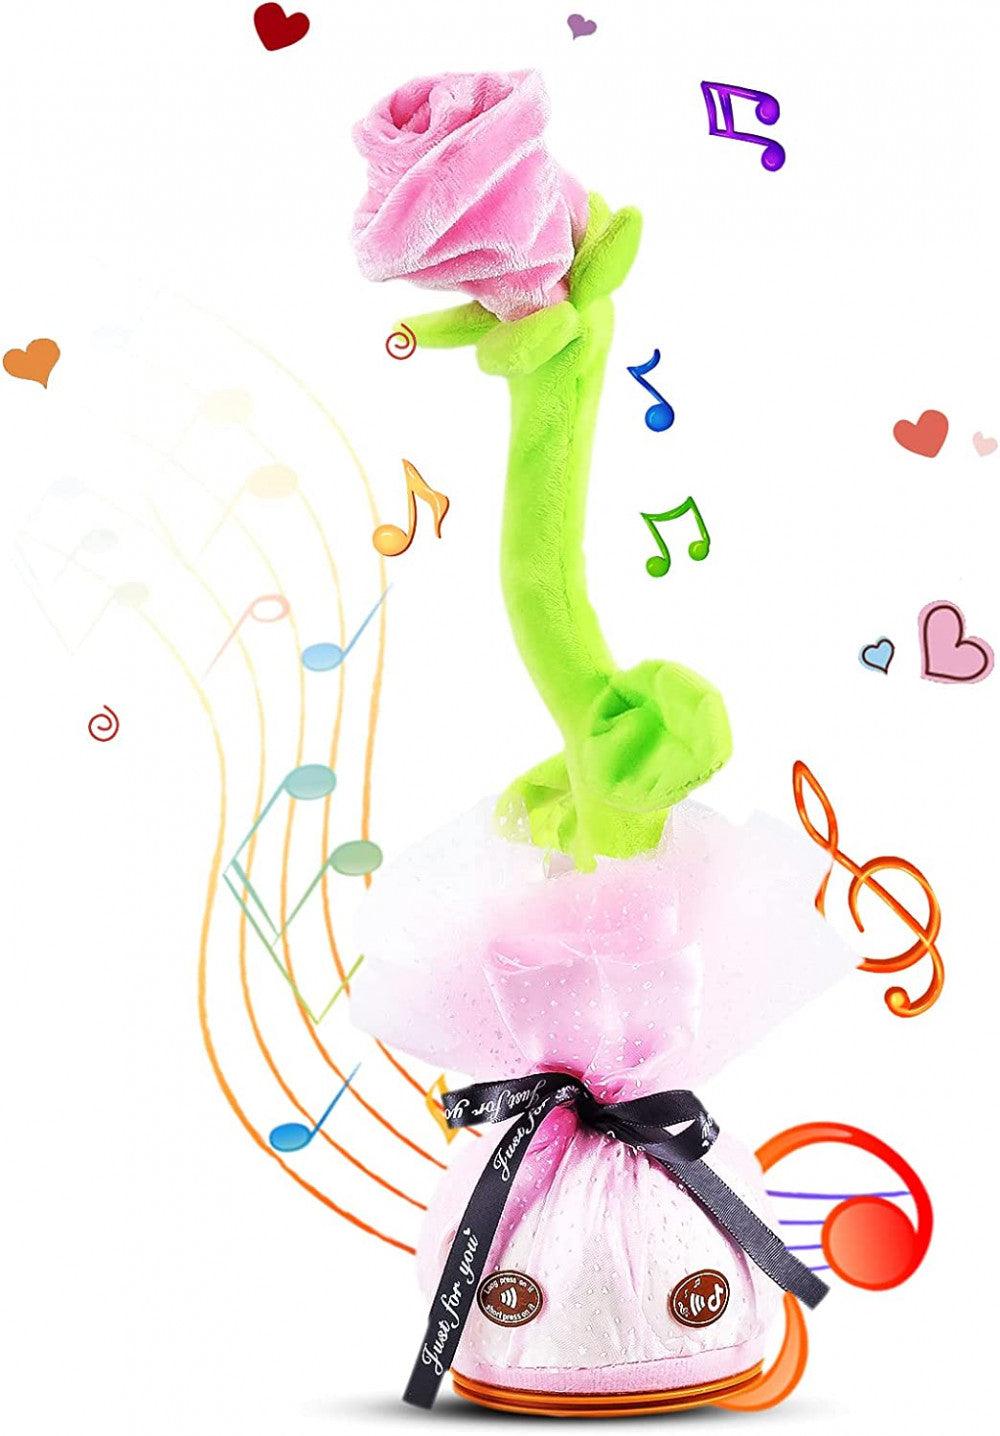 Táncoló Rózsa játék - visszabeszélő zenélő rózsa - Outlet24